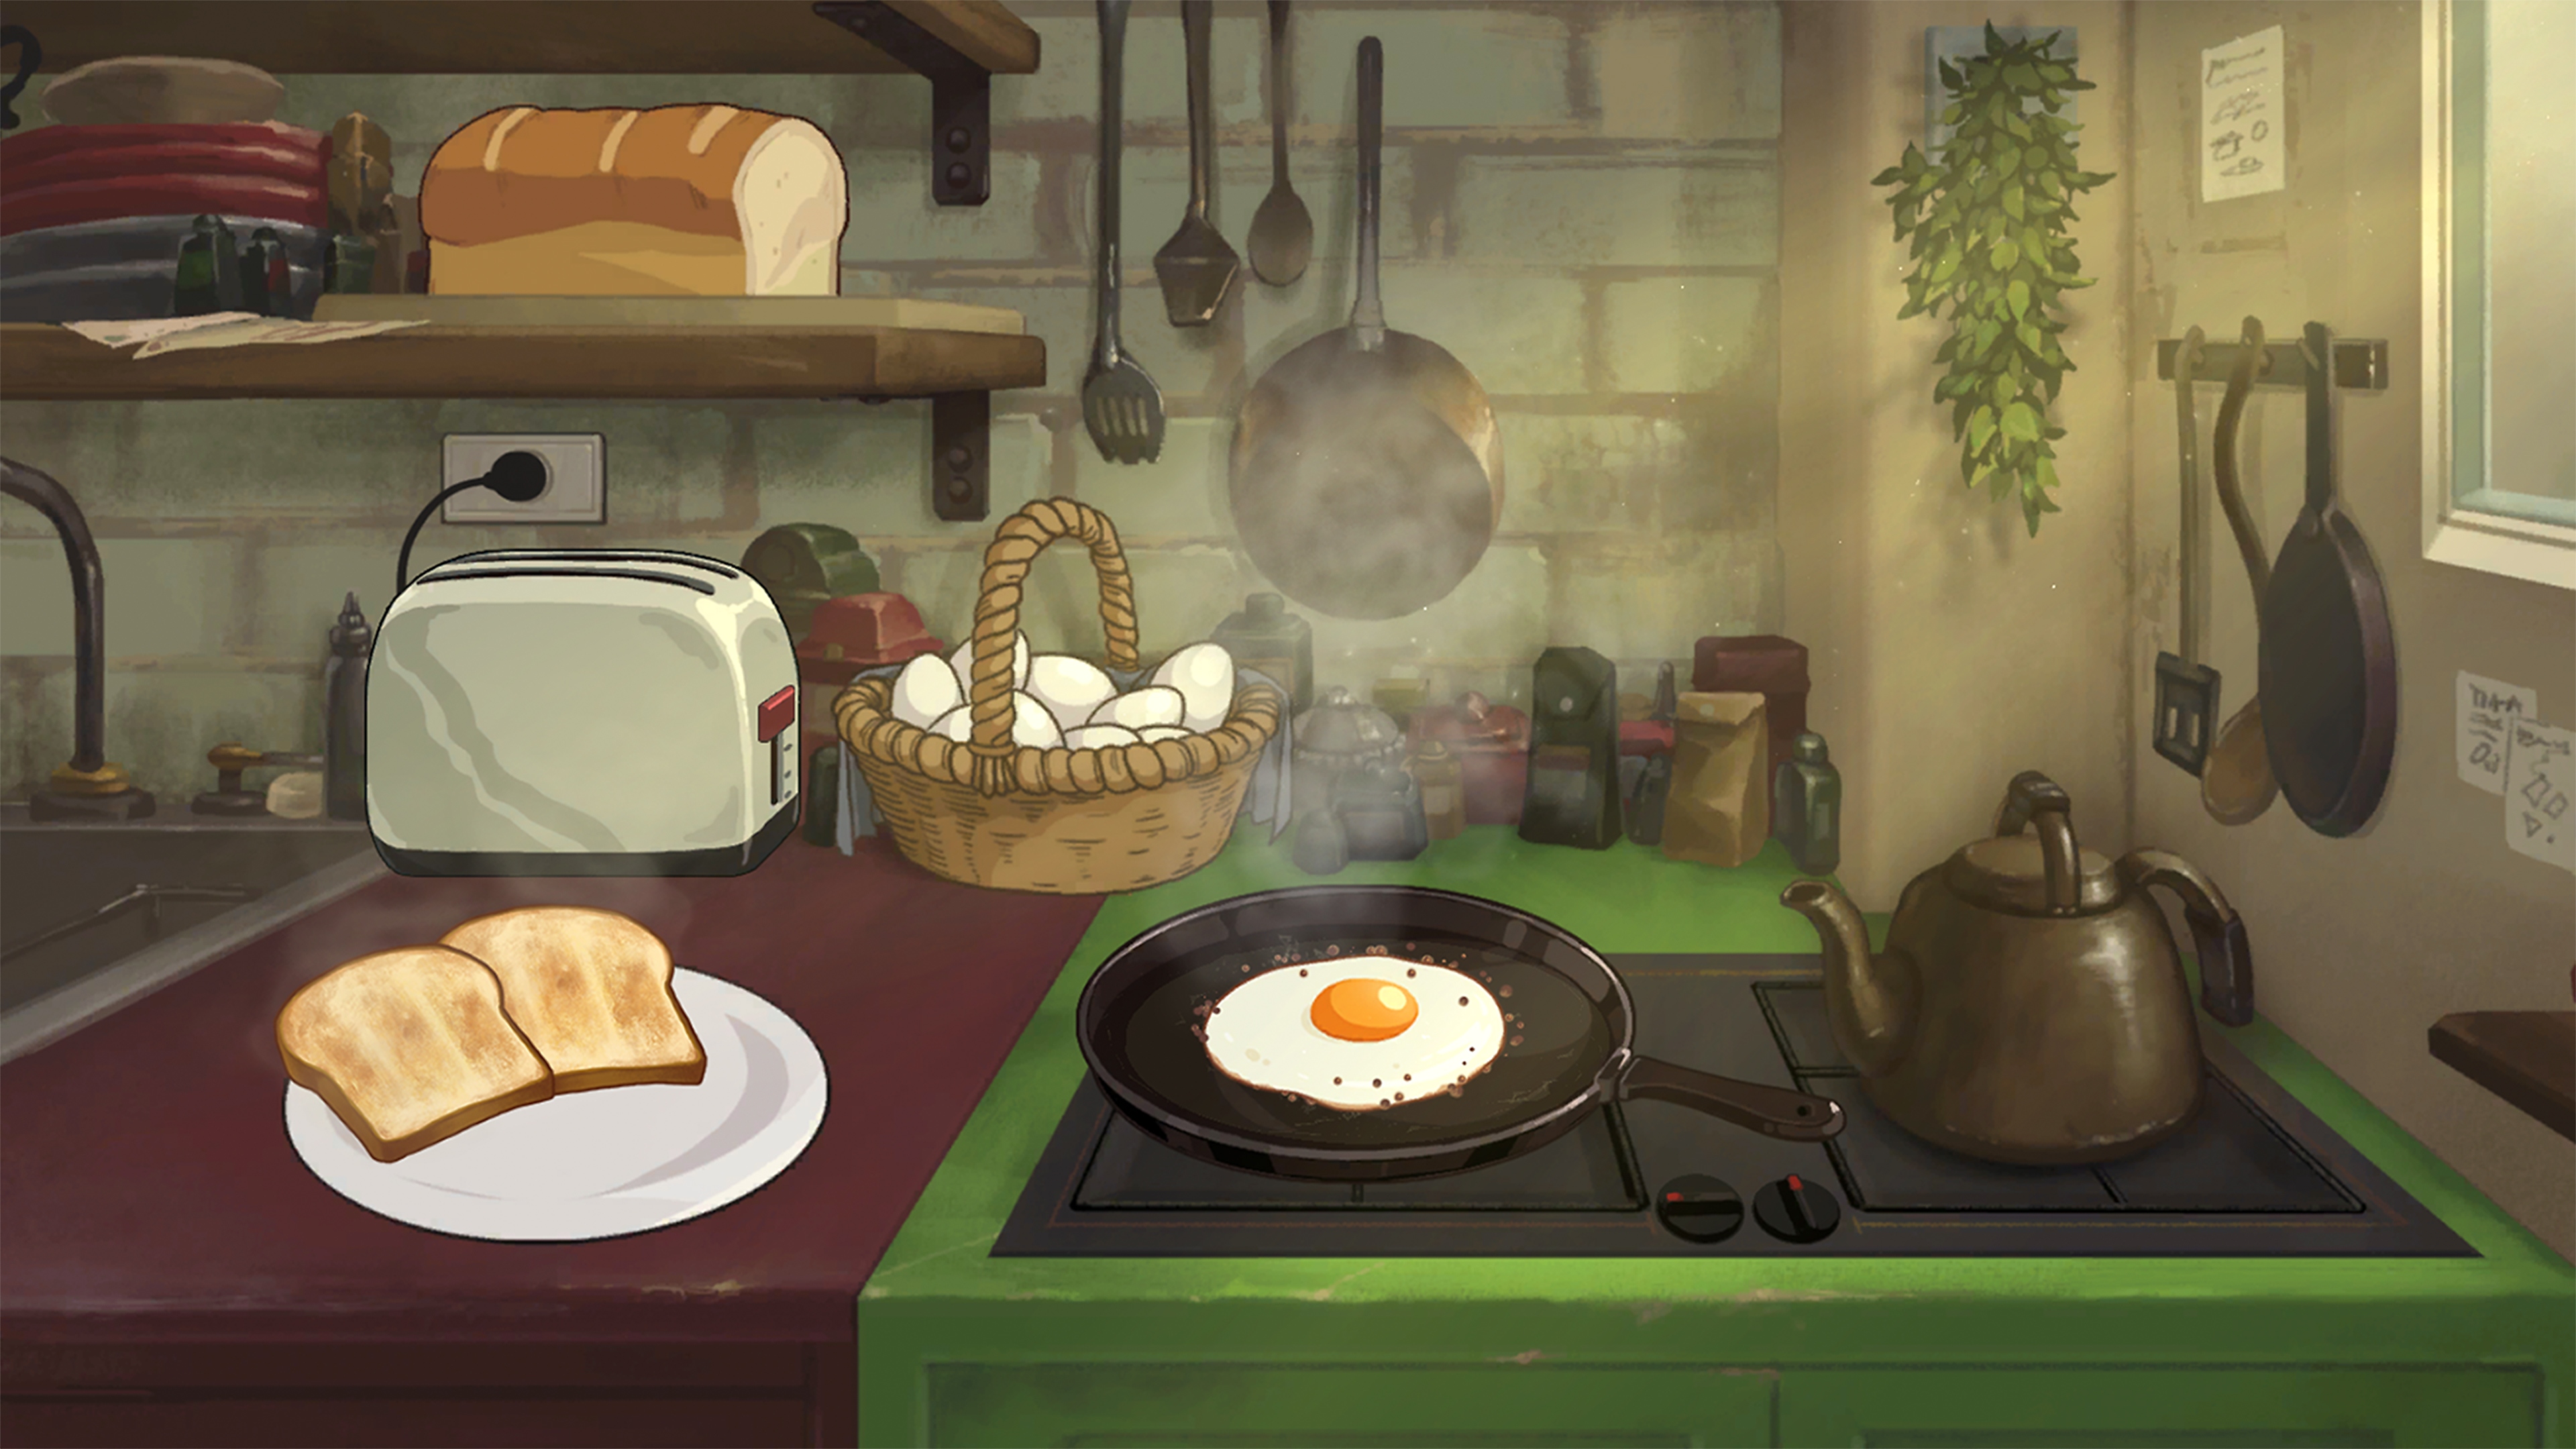 Behind the Frame: The Finest Scenery – snímek obrazovky zobrazující přípravu snídaně na sporáku